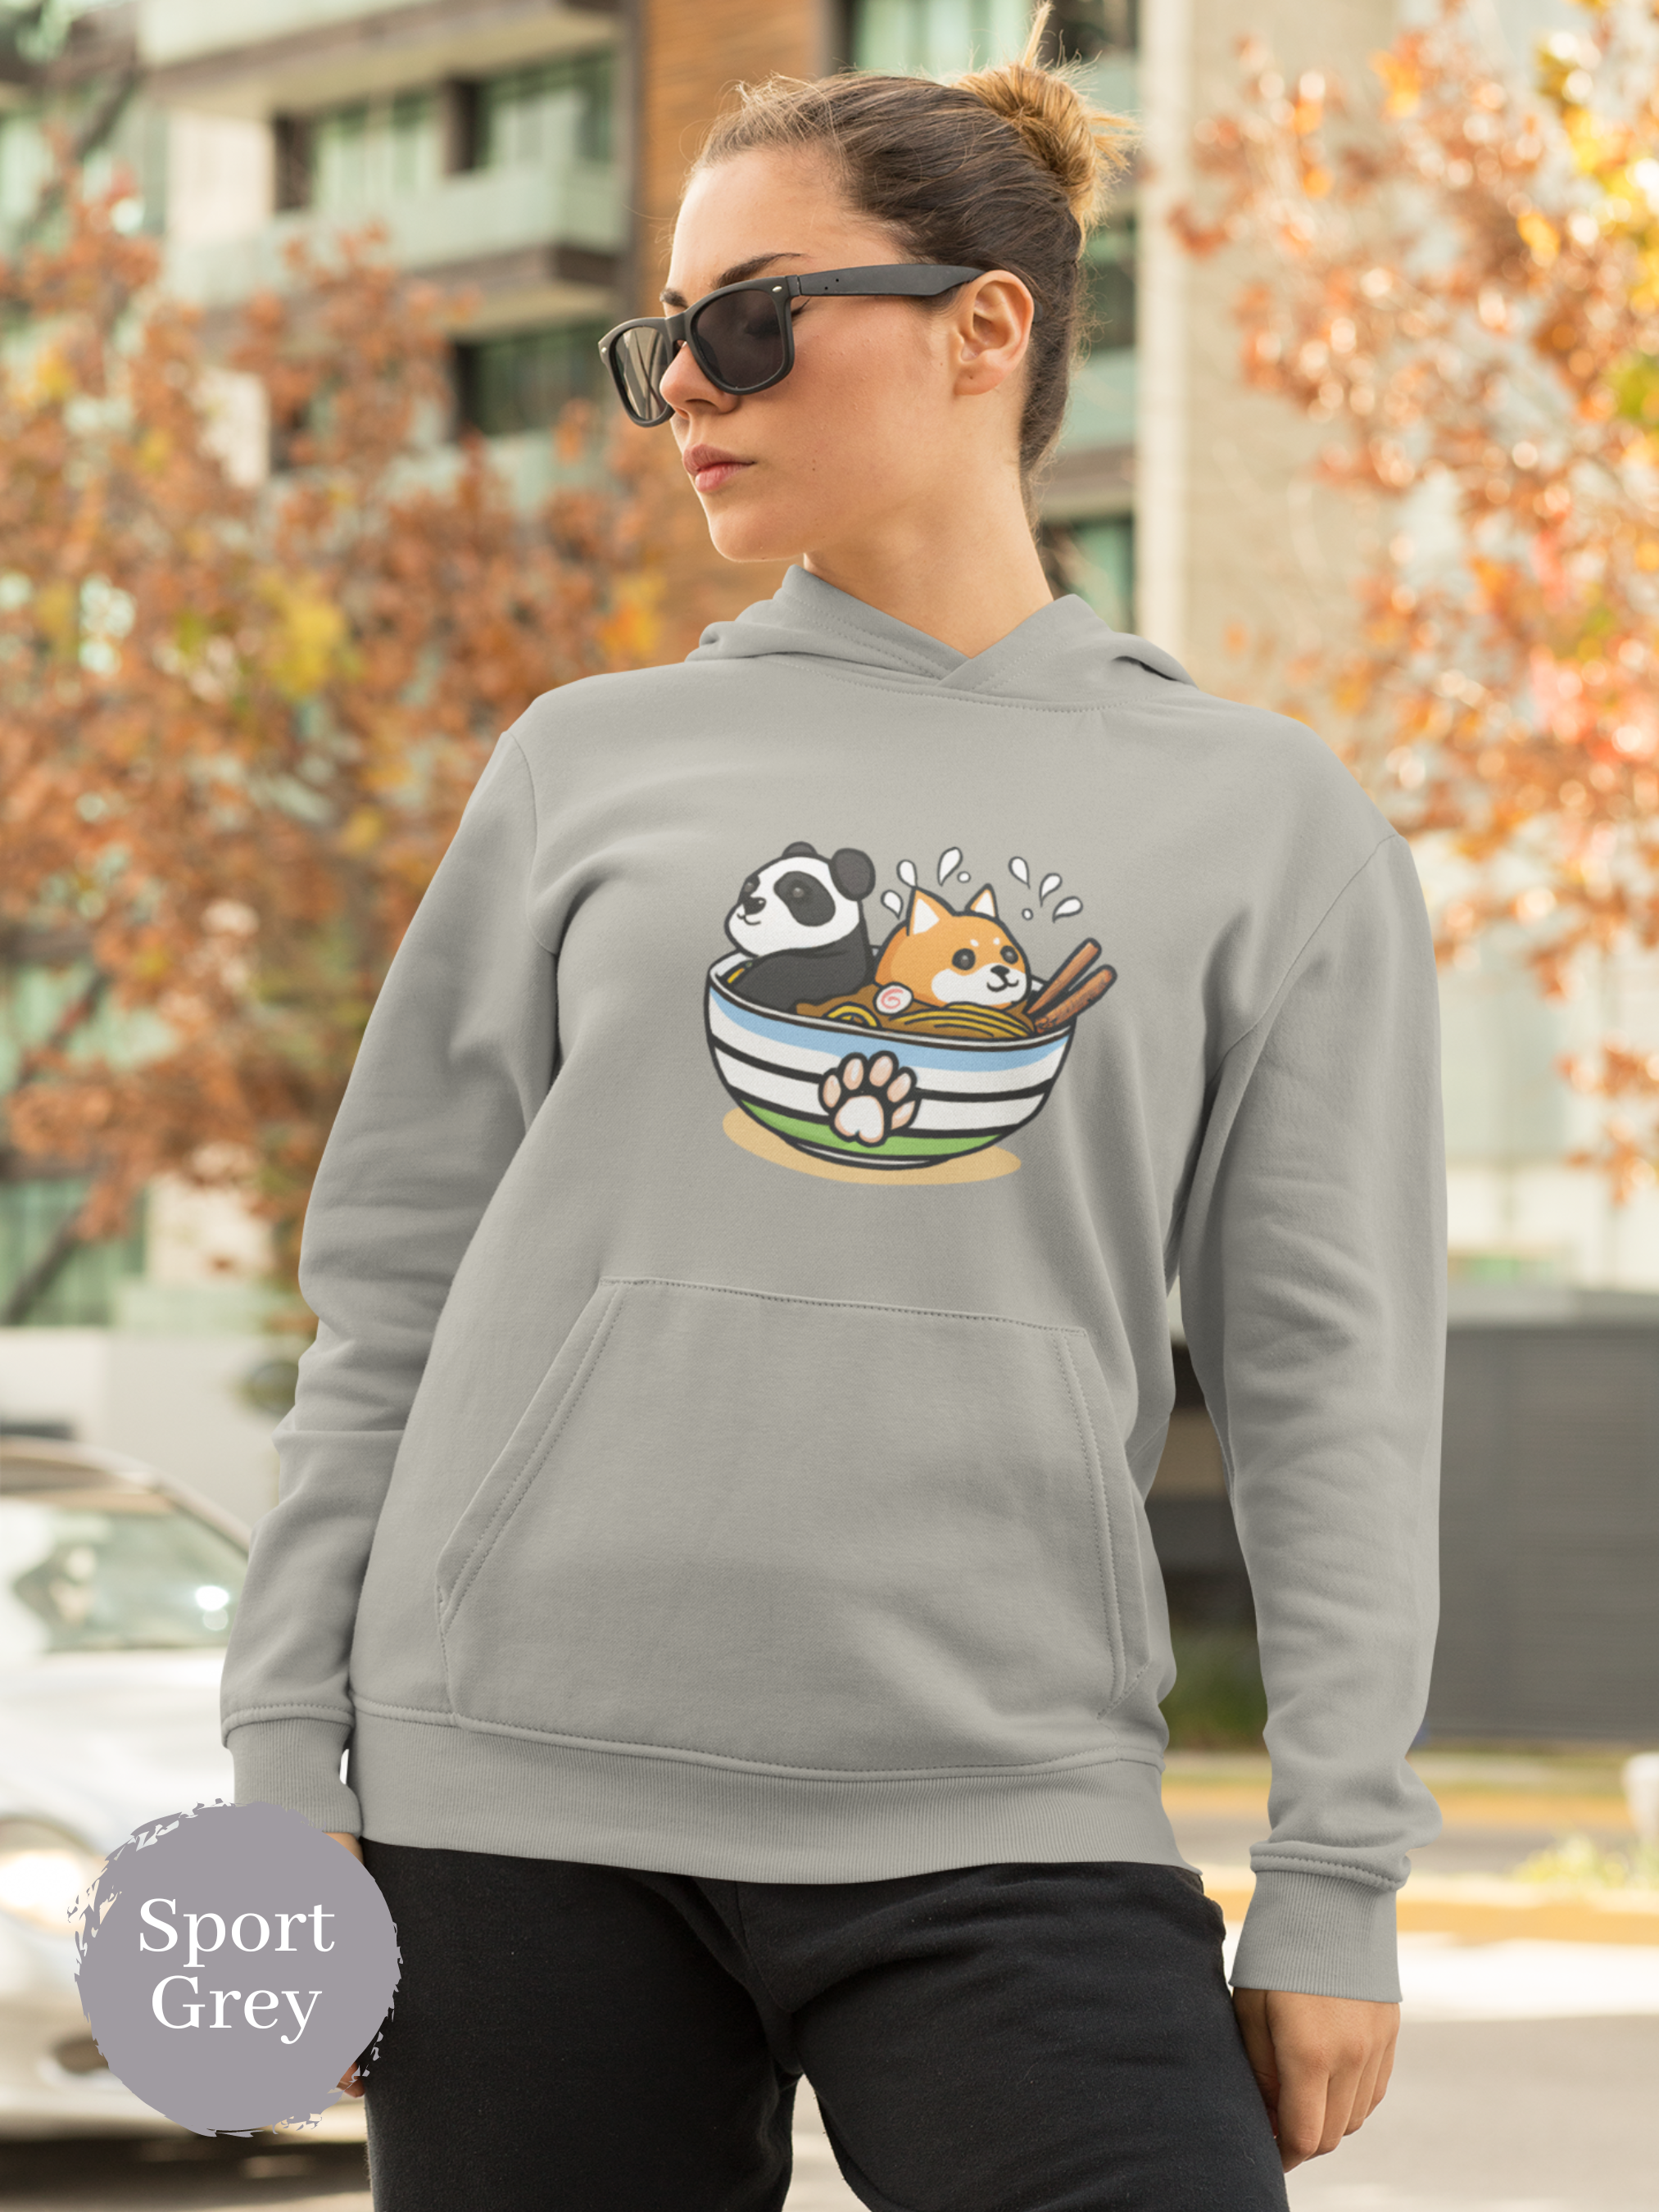 Ramen Hoodie: Panda and Shiba Inu in Ramen Bowl - Asian Food Hoodie - Ramen Art Sweatshirt